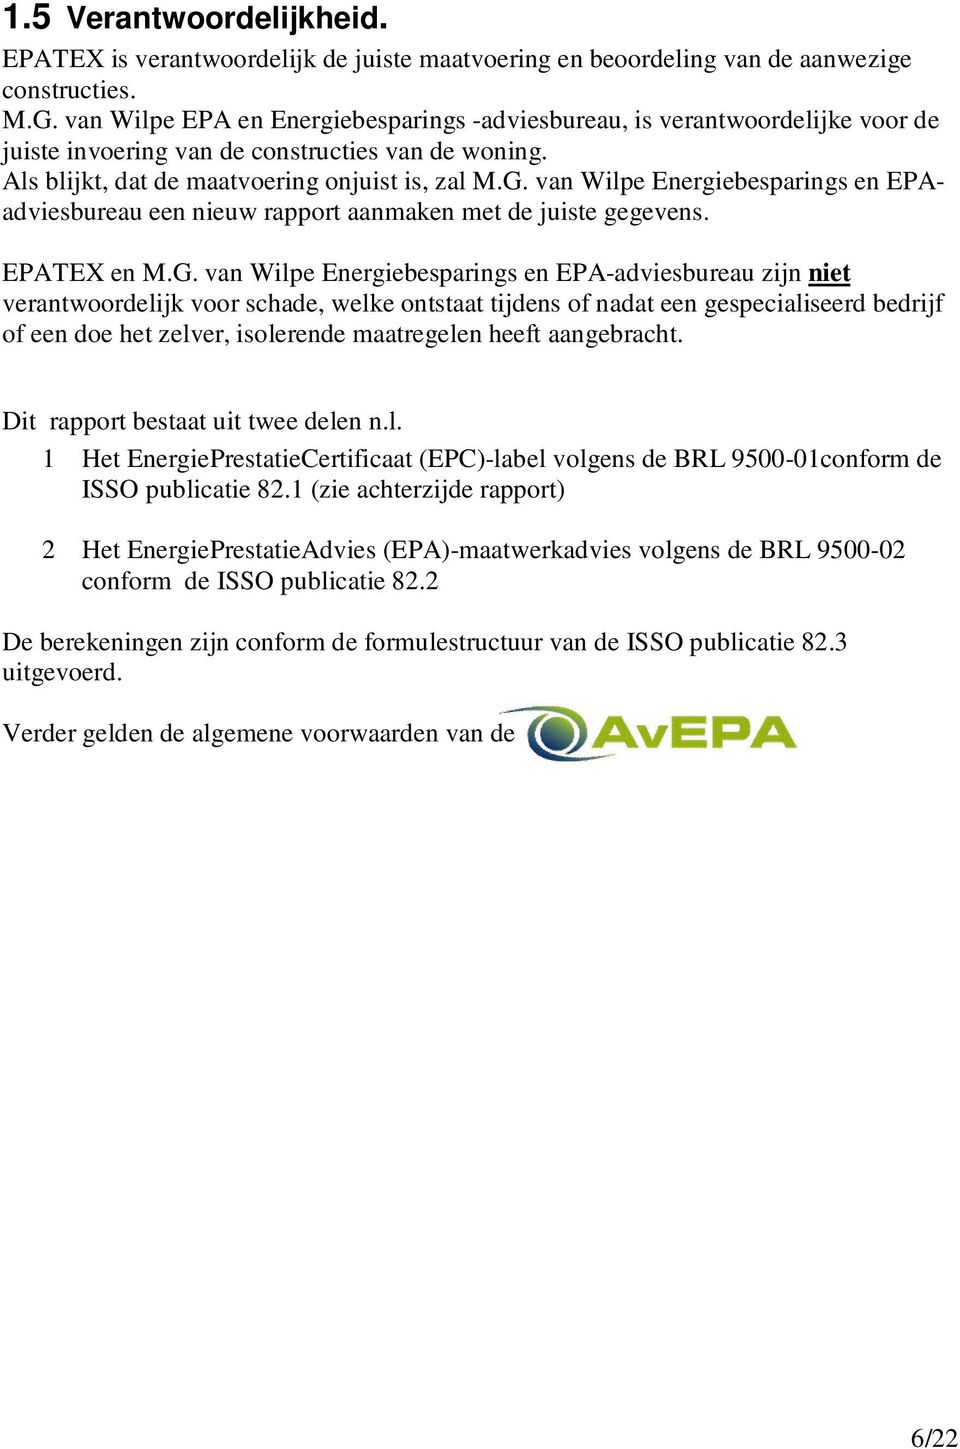 van Wilpe Energiebesparings en EPAadviesbureau een nieuw rapport aanmaken met de juiste gegevens. EPATEX en M.G.